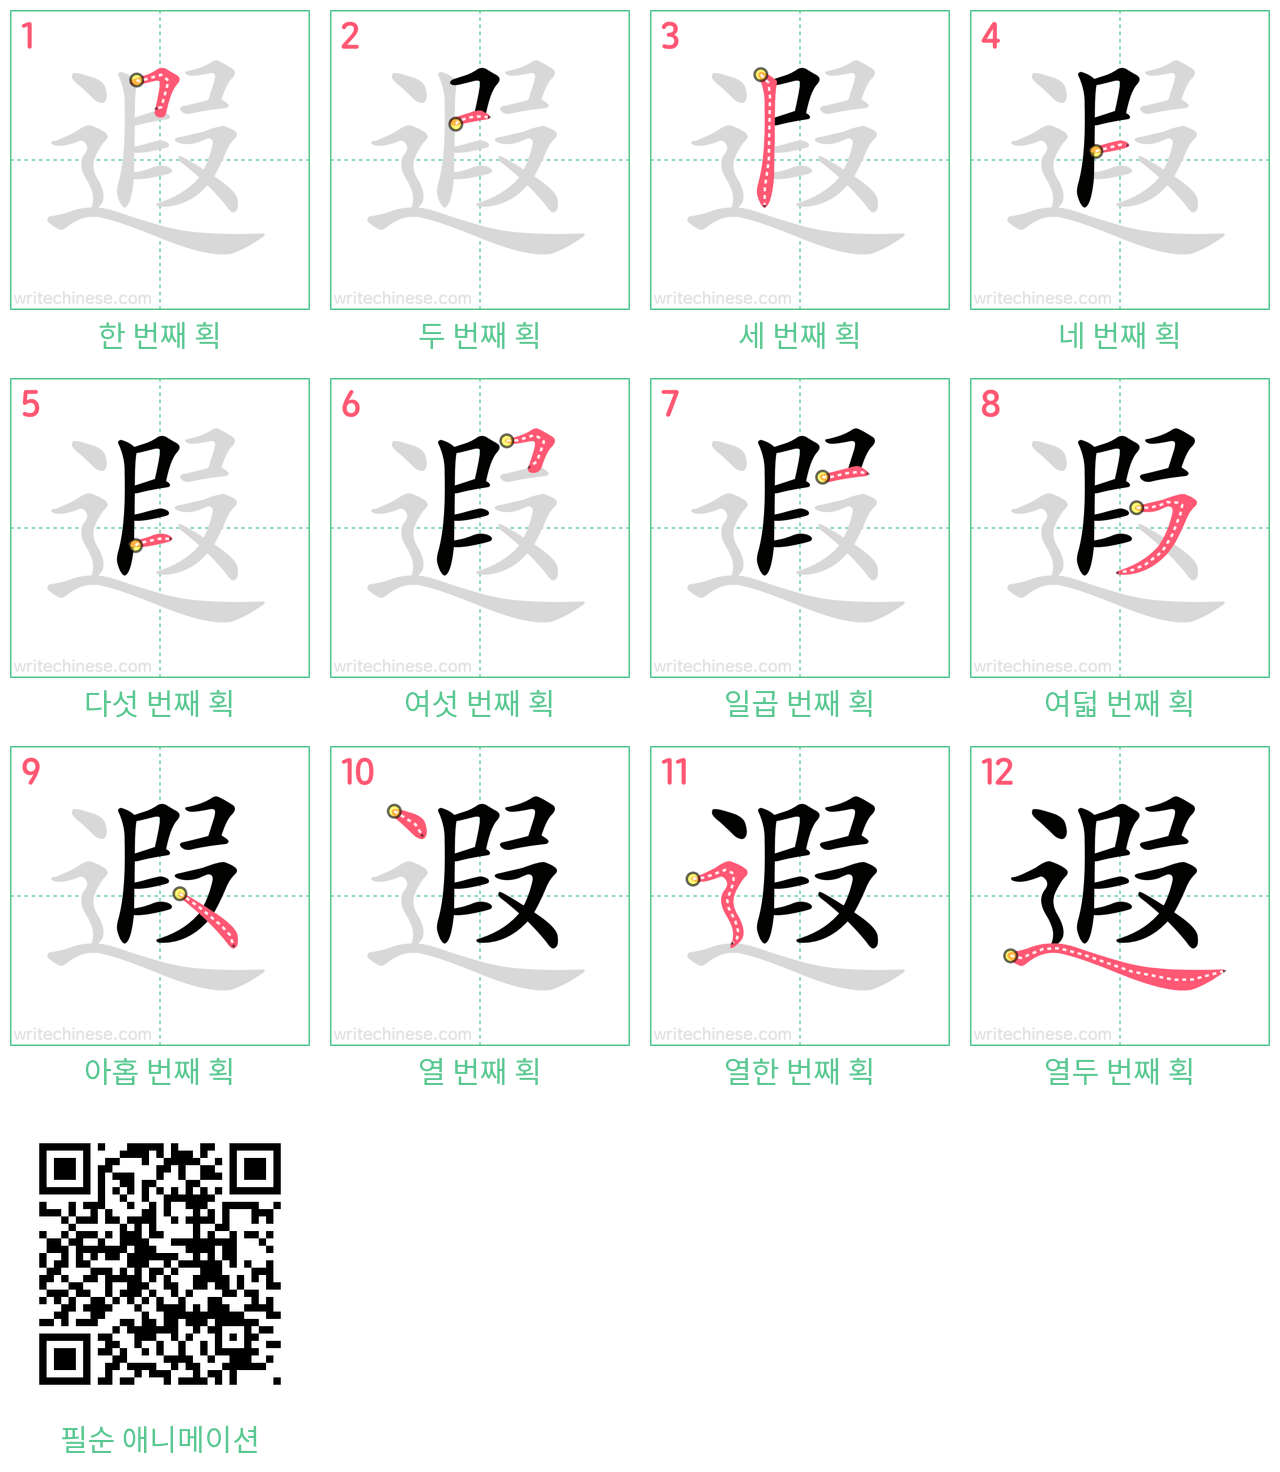 遐 step-by-step stroke order diagrams